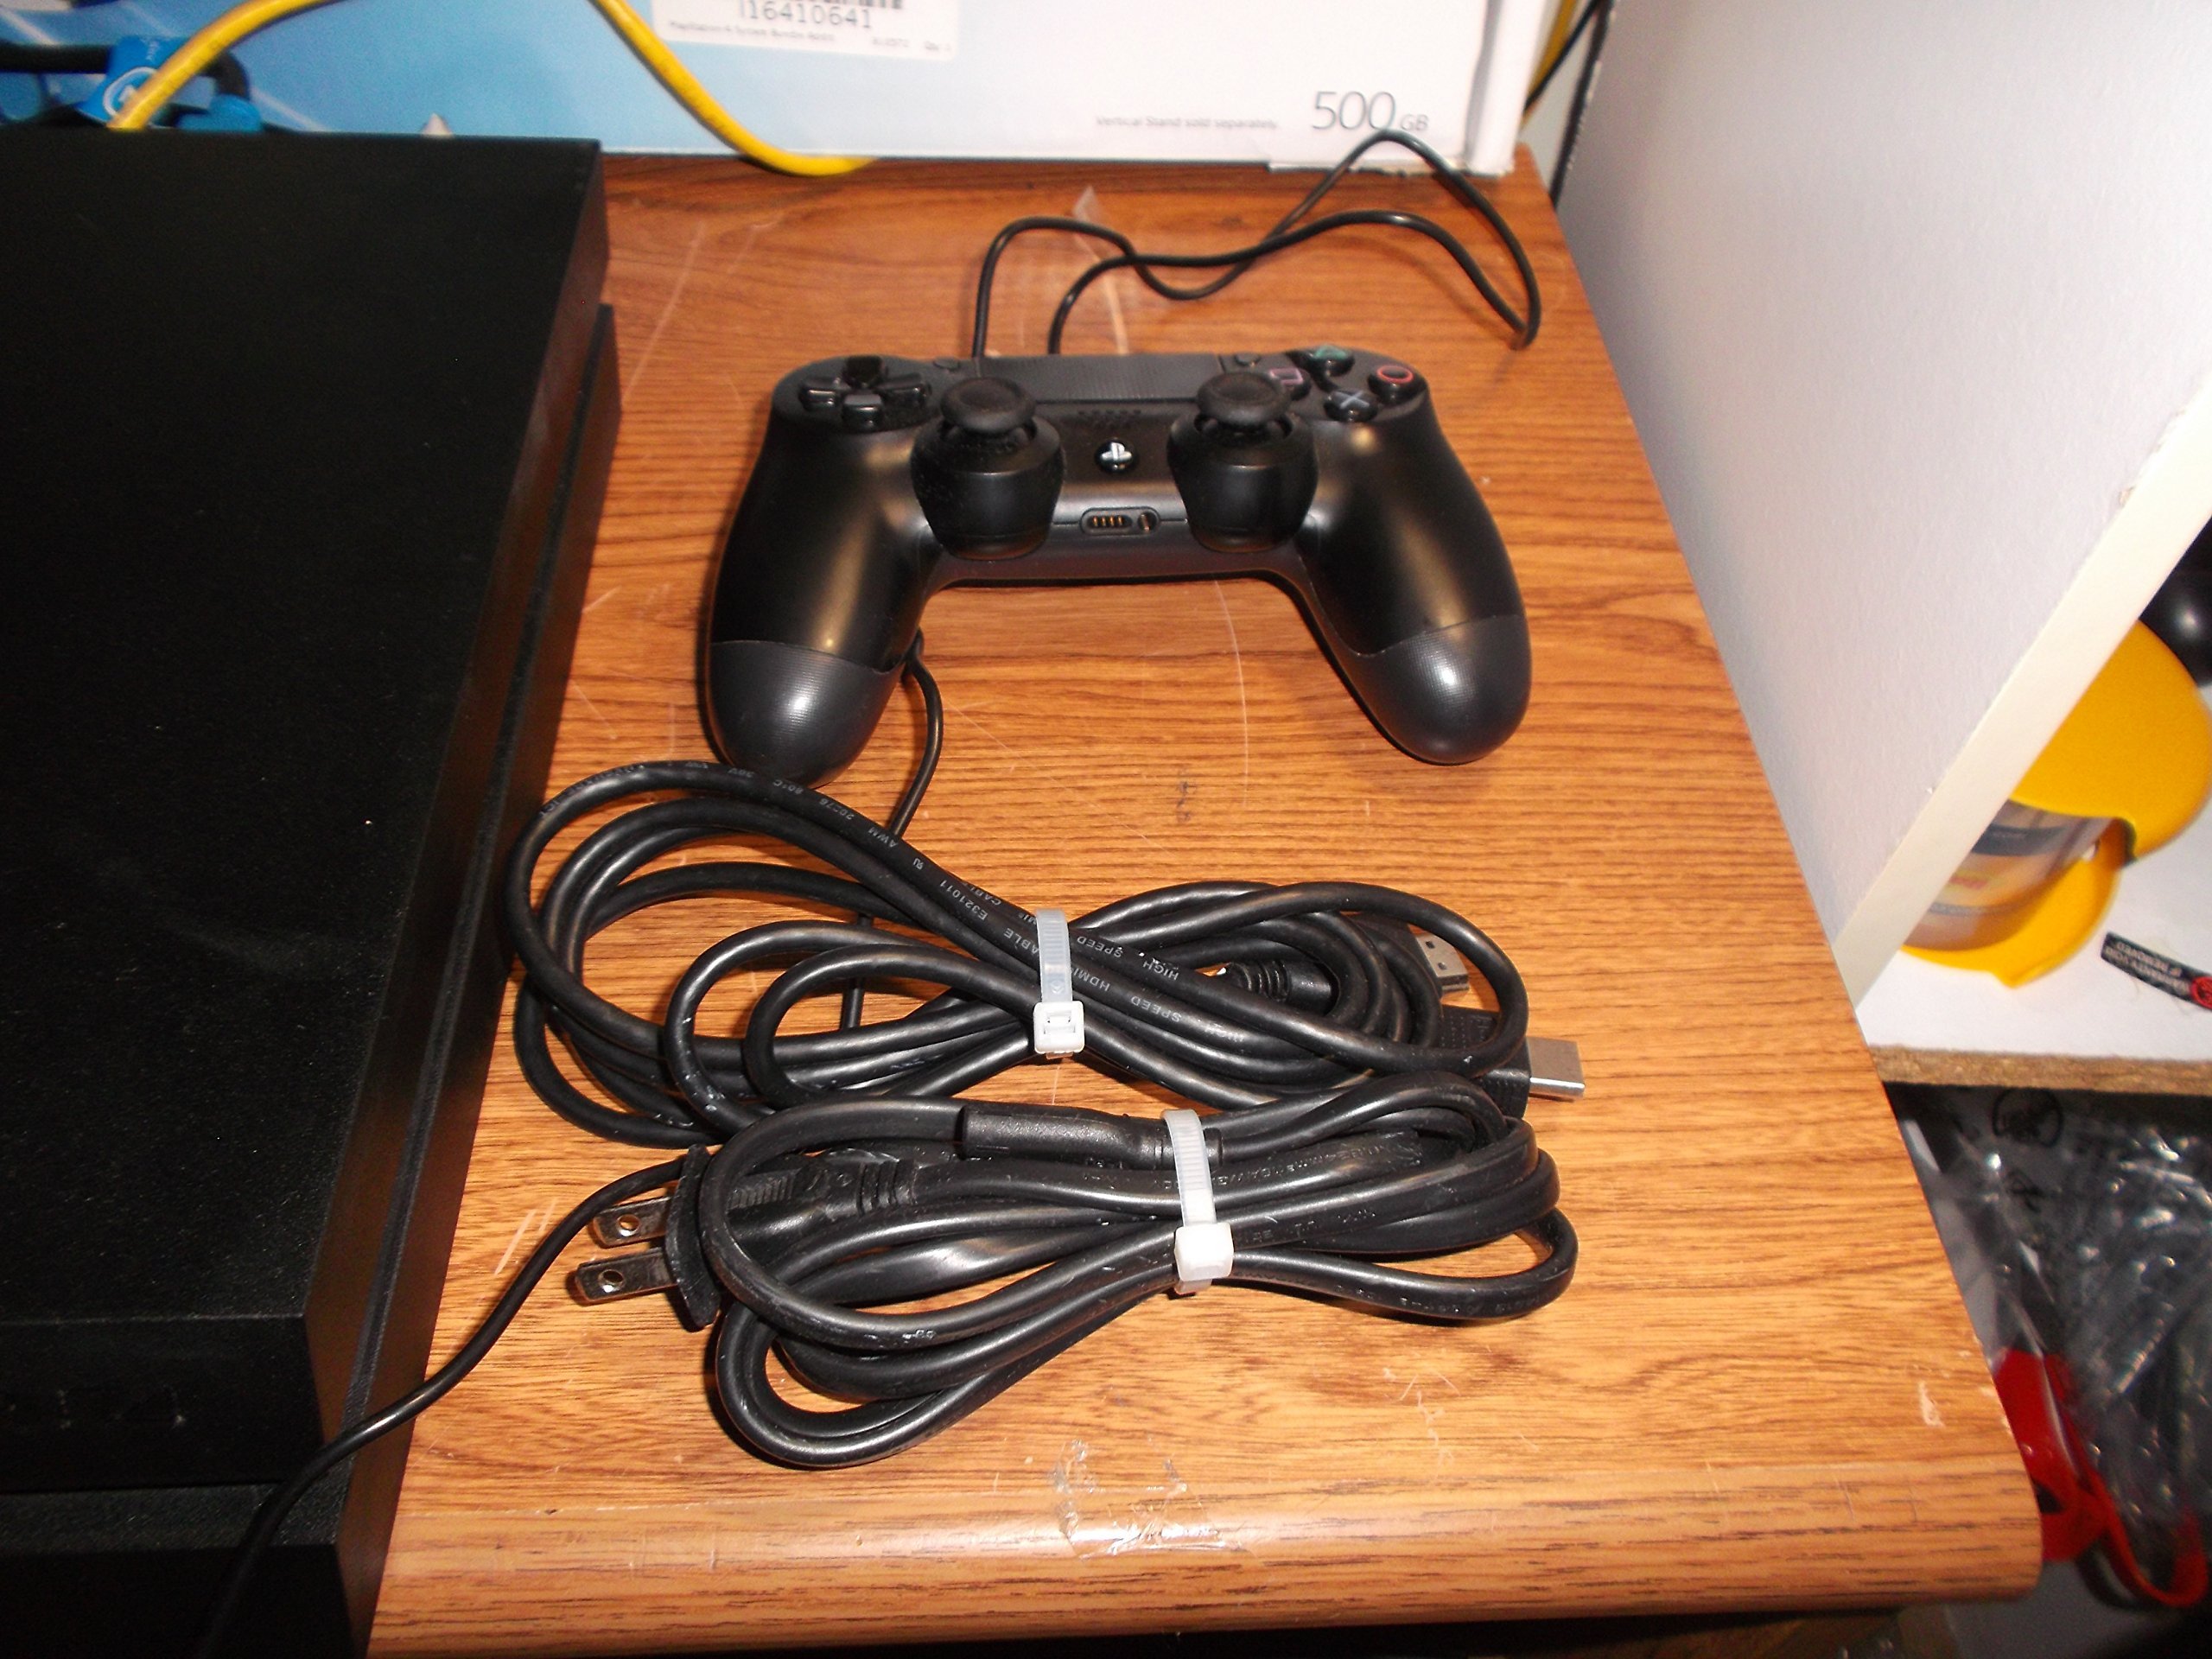 PlayStation 4 Console 500 GB (Renewed)